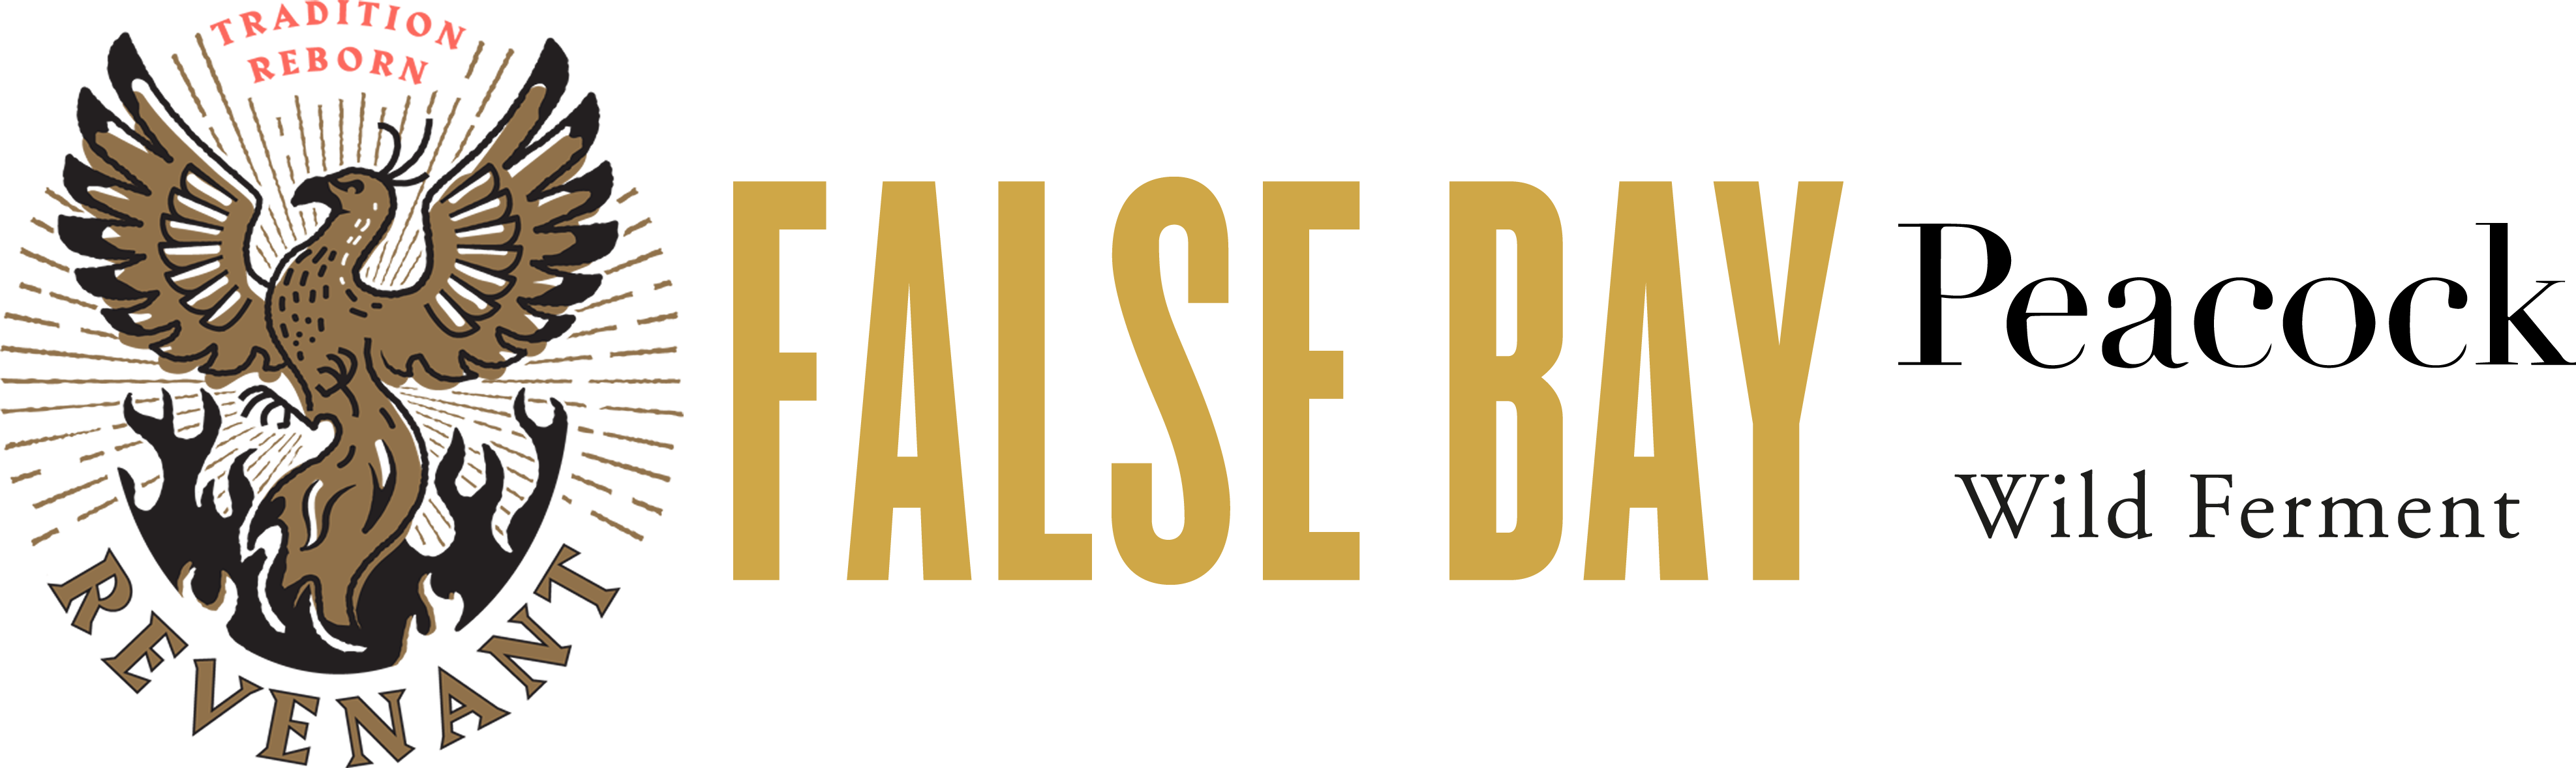 False Bay Winery